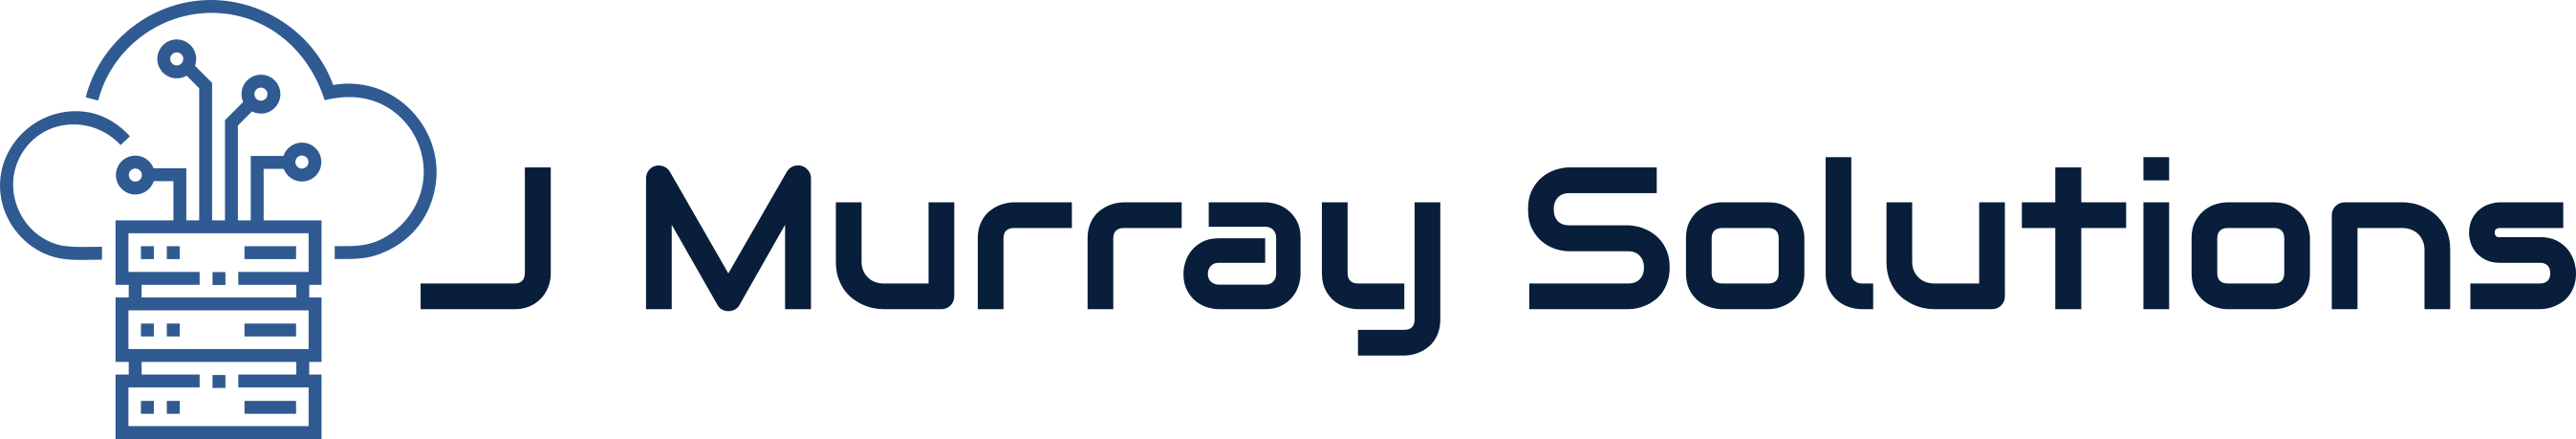 J Murray Solutions Logo - Blue Transparent